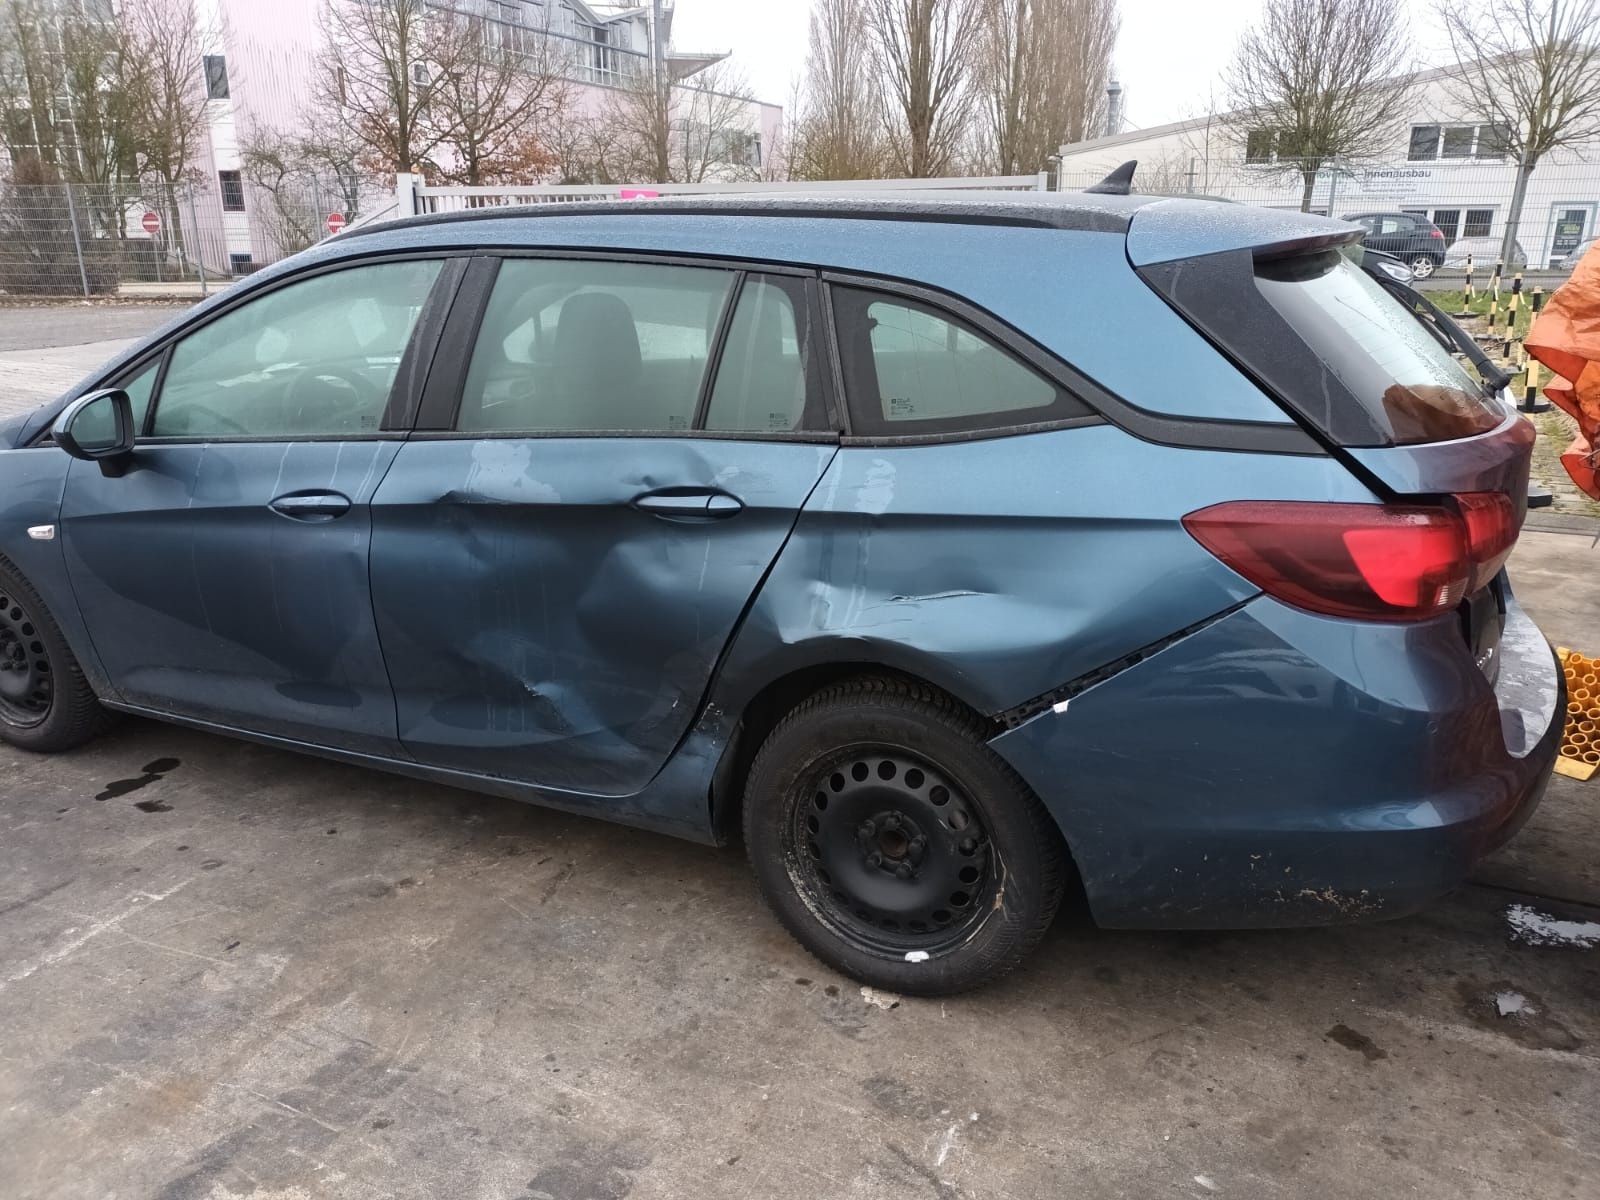 Opel Astra, bogata wersja - uszkodzona